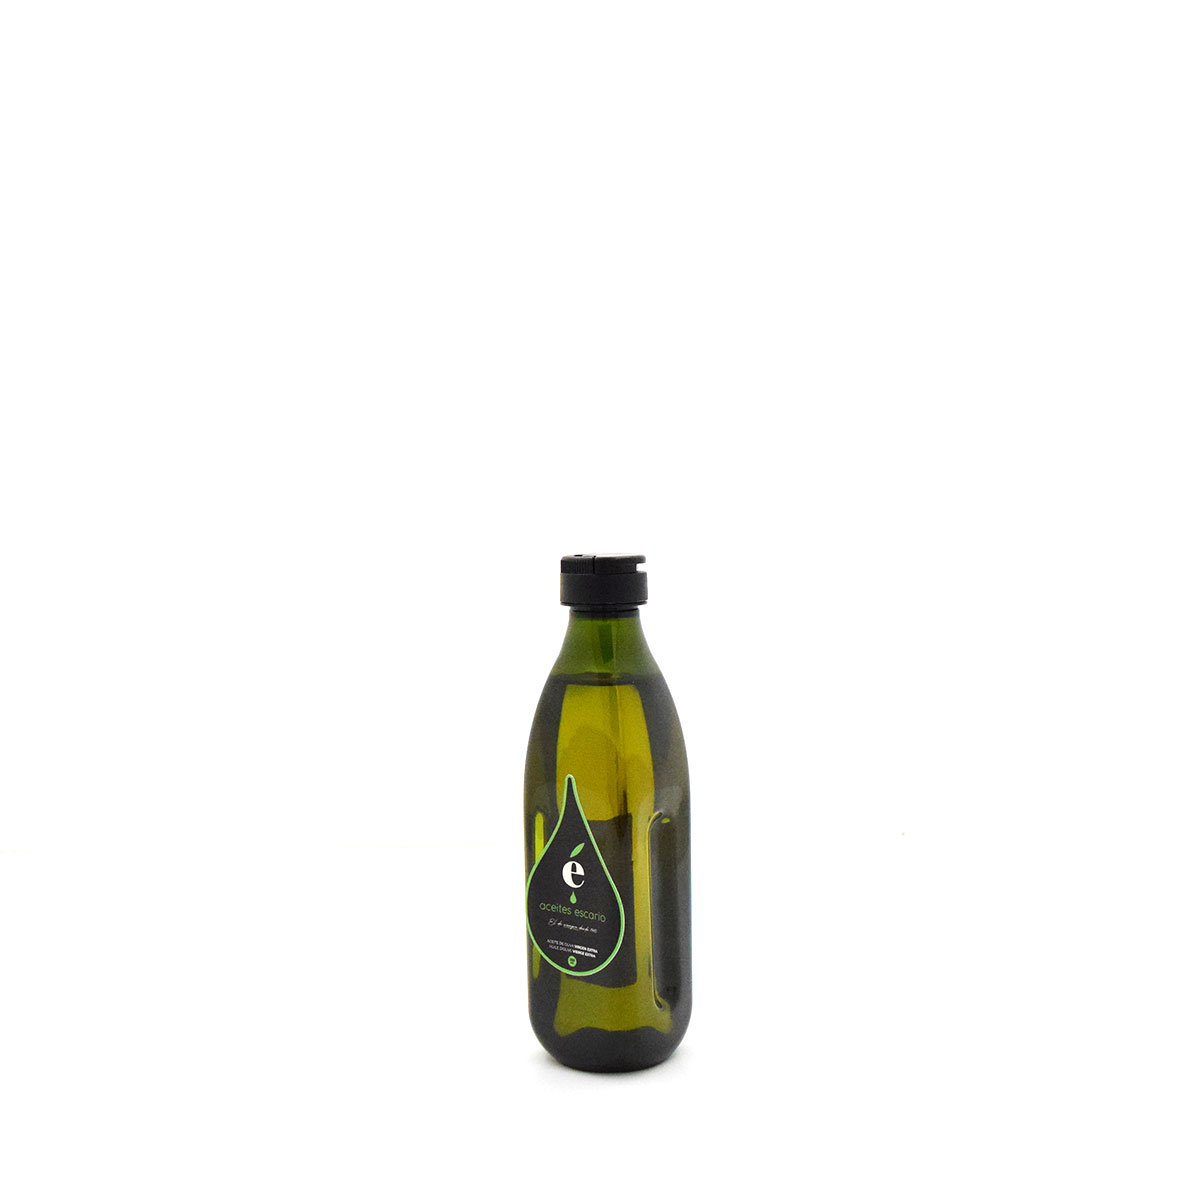 Botella de aceite de oliva Virgen Extra Escario coupage 250ml